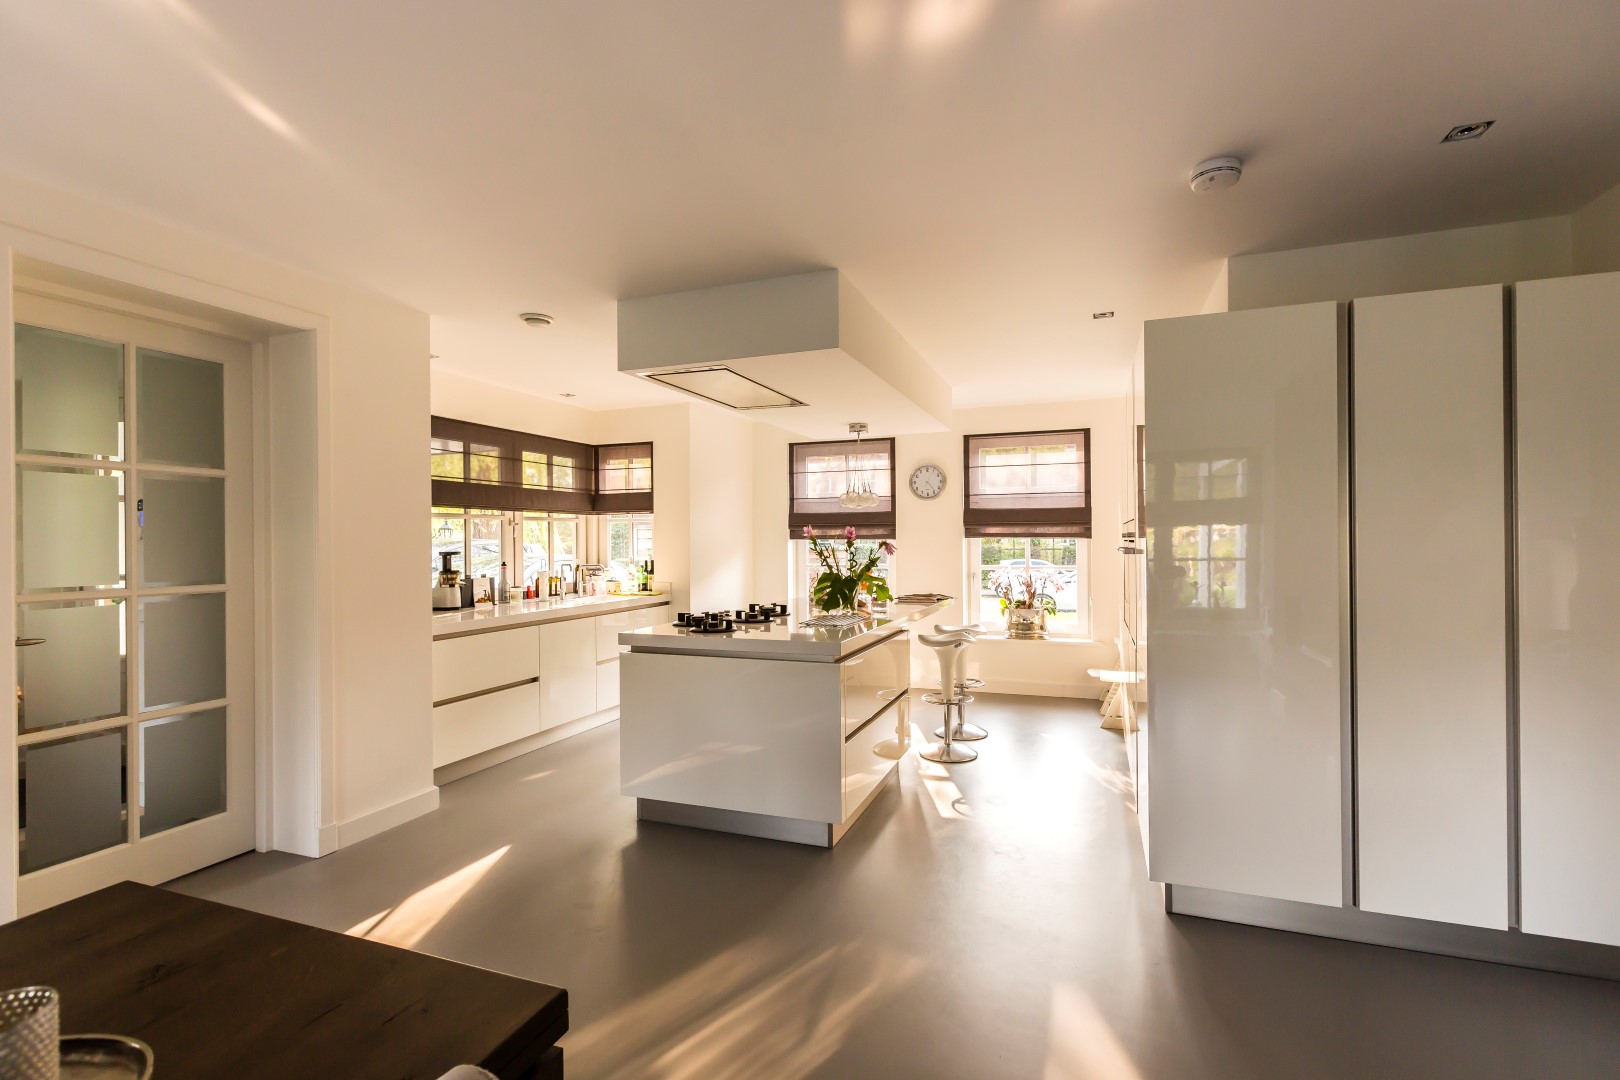 Foto: Moderne greeploze keuken in herenhuis    Lichtenberg Exclusieve Villabouw